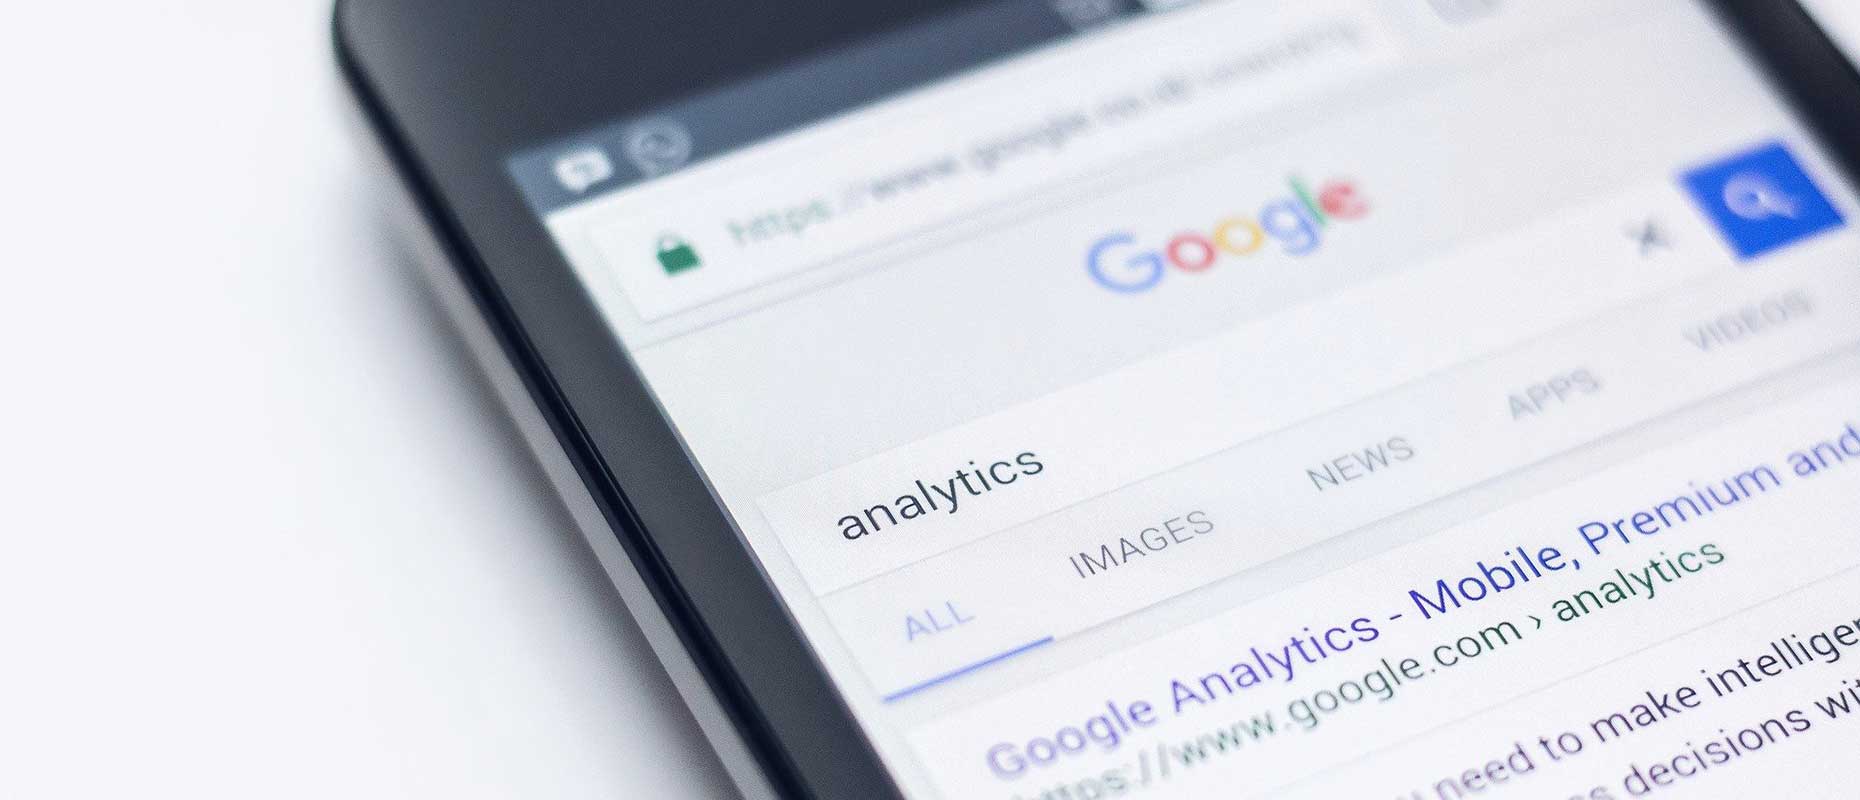 Handy welches Google Analytics geoeffnet hat